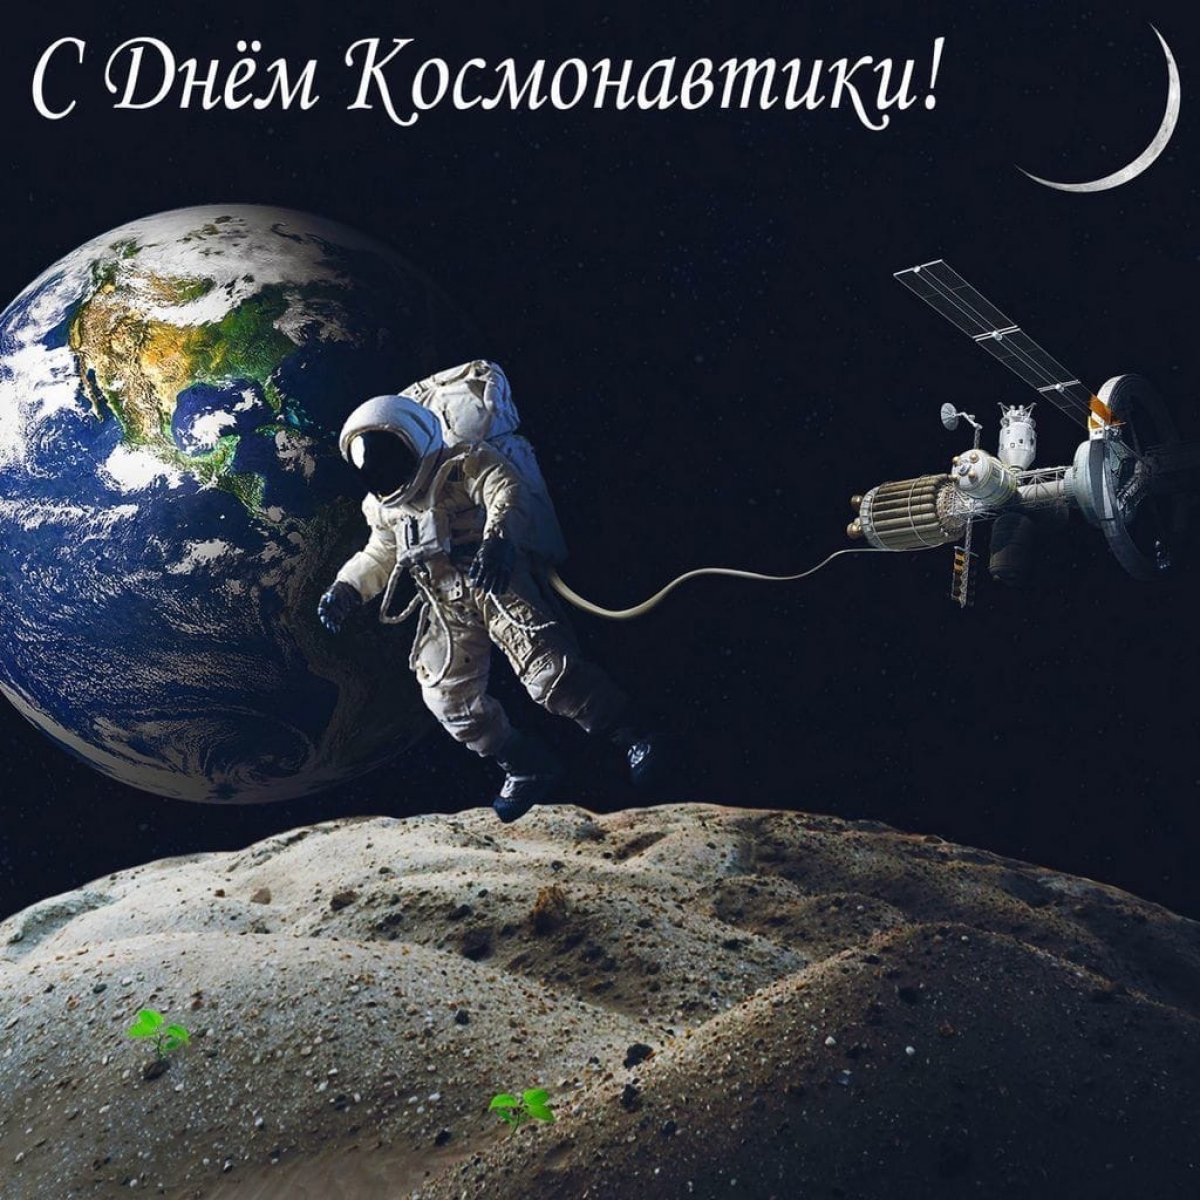 12 апреля, в день, когда Юрий Гагарин совершил первый в истории человечества космический полет, в России отмечается День космонавтики. В мире этот день провозглашен Международным днем полета человека в космос.